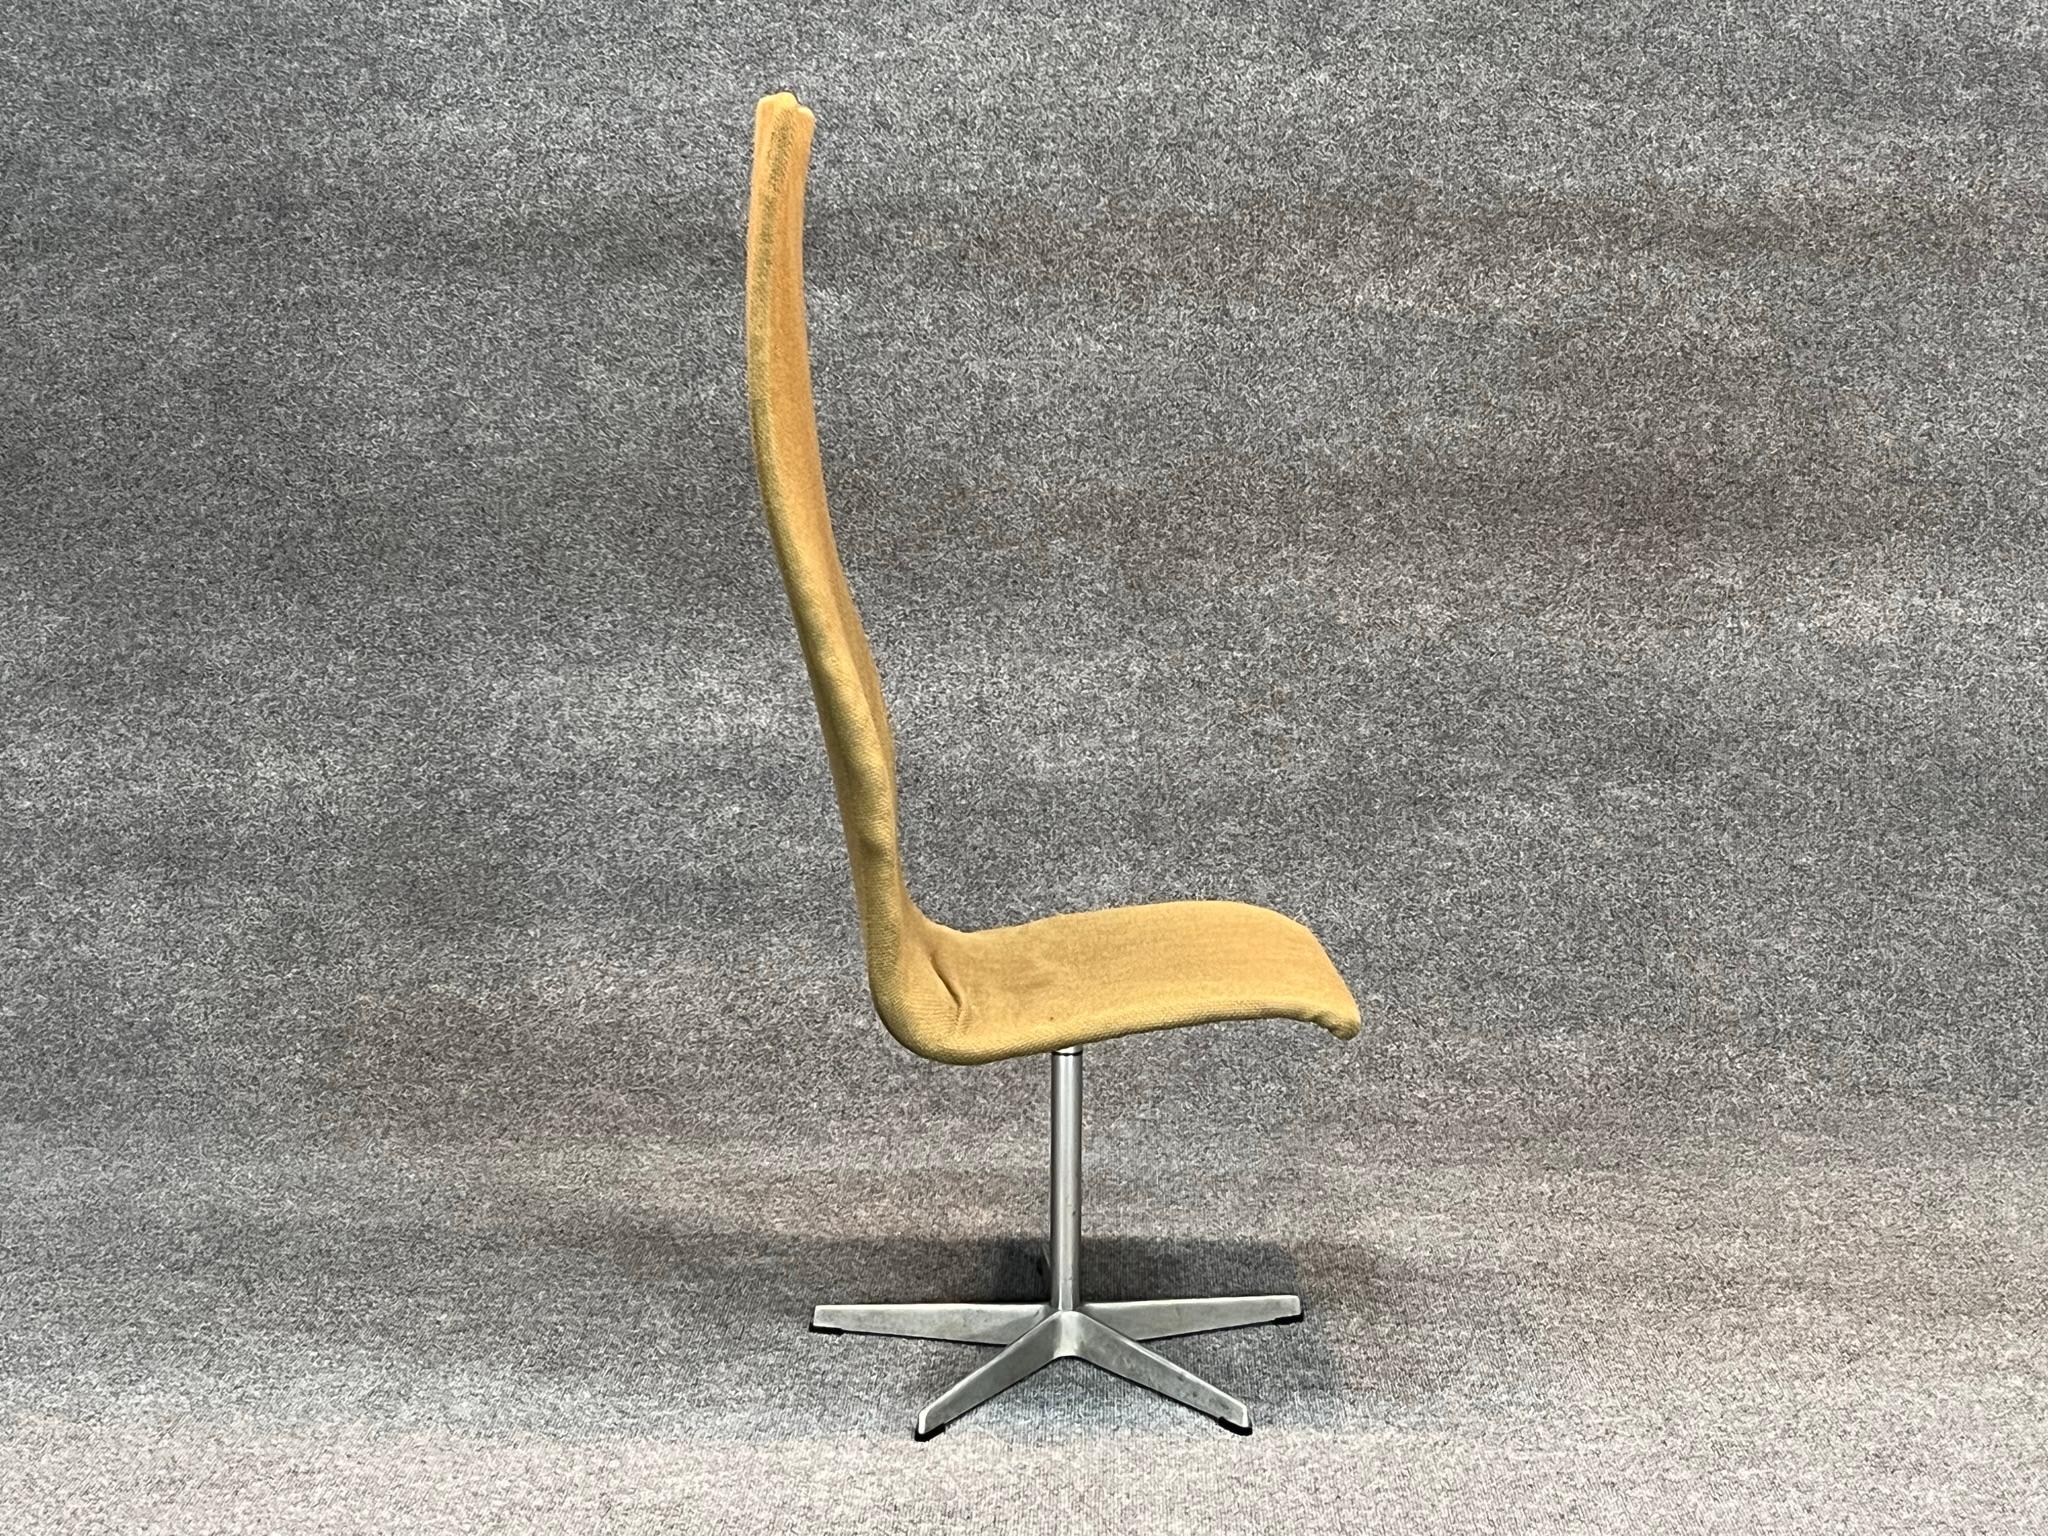 Mid-20th Century Danish Modern High Back Swivel Oxford chair by Arne Jacobsen for Fritz Hansen For Sale